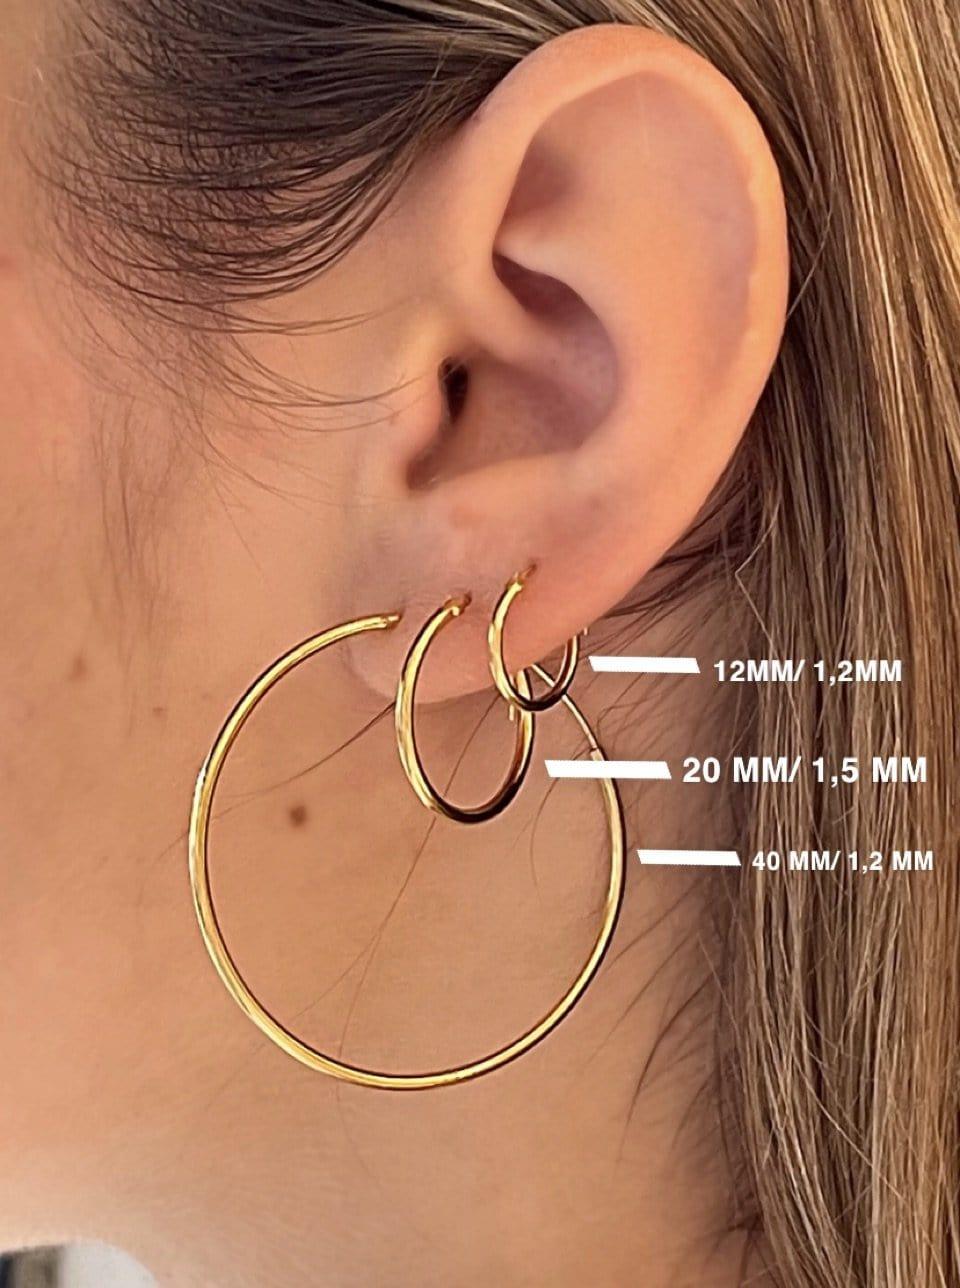 Gold Plated Hoop Earrings 40 MM 1,2MM - Juulry.com